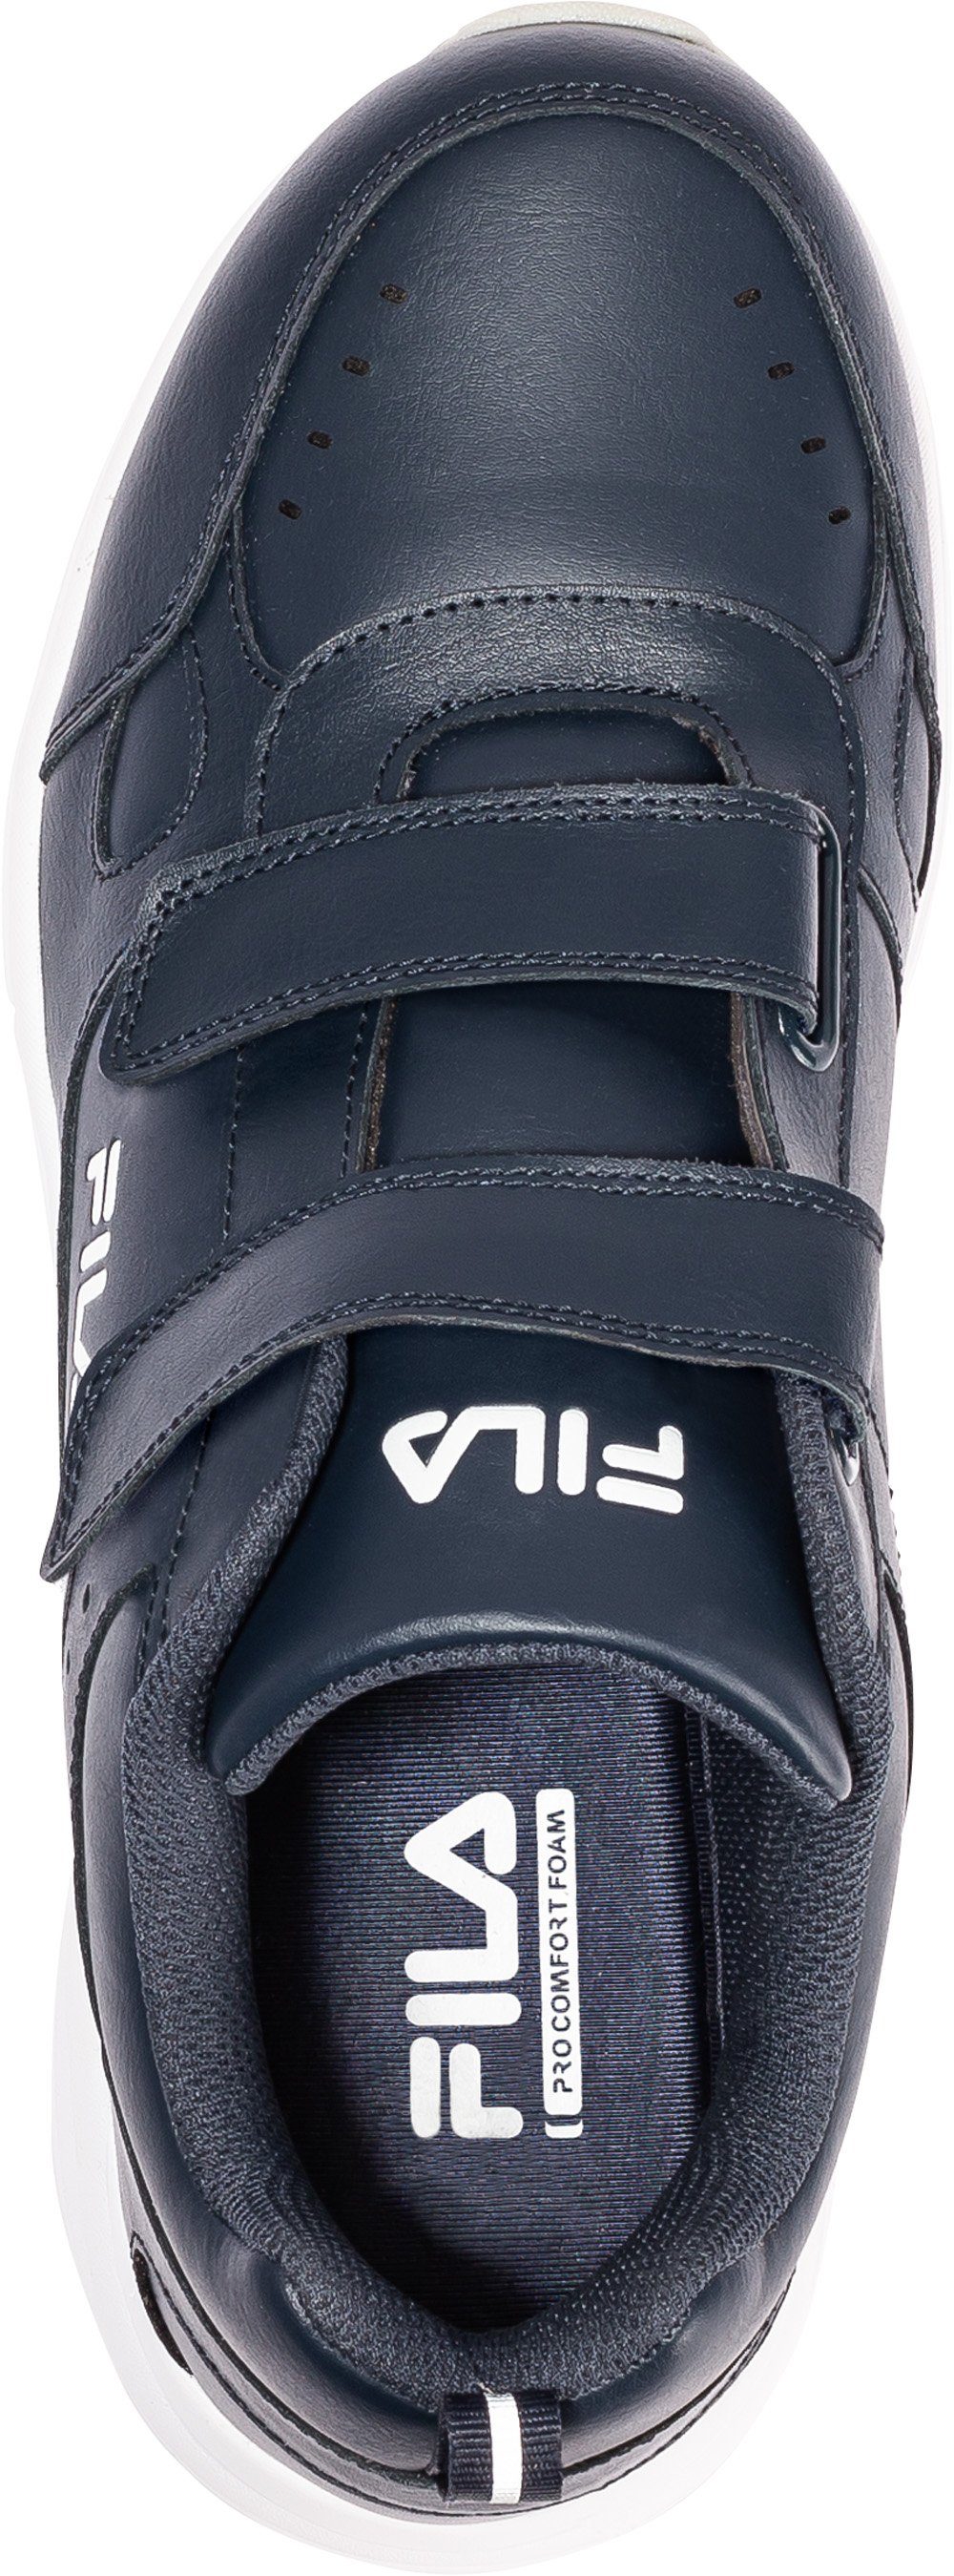 stabiler Halt blau Fila Pro-Comfort-Sohlentechnologie dank Sneaker